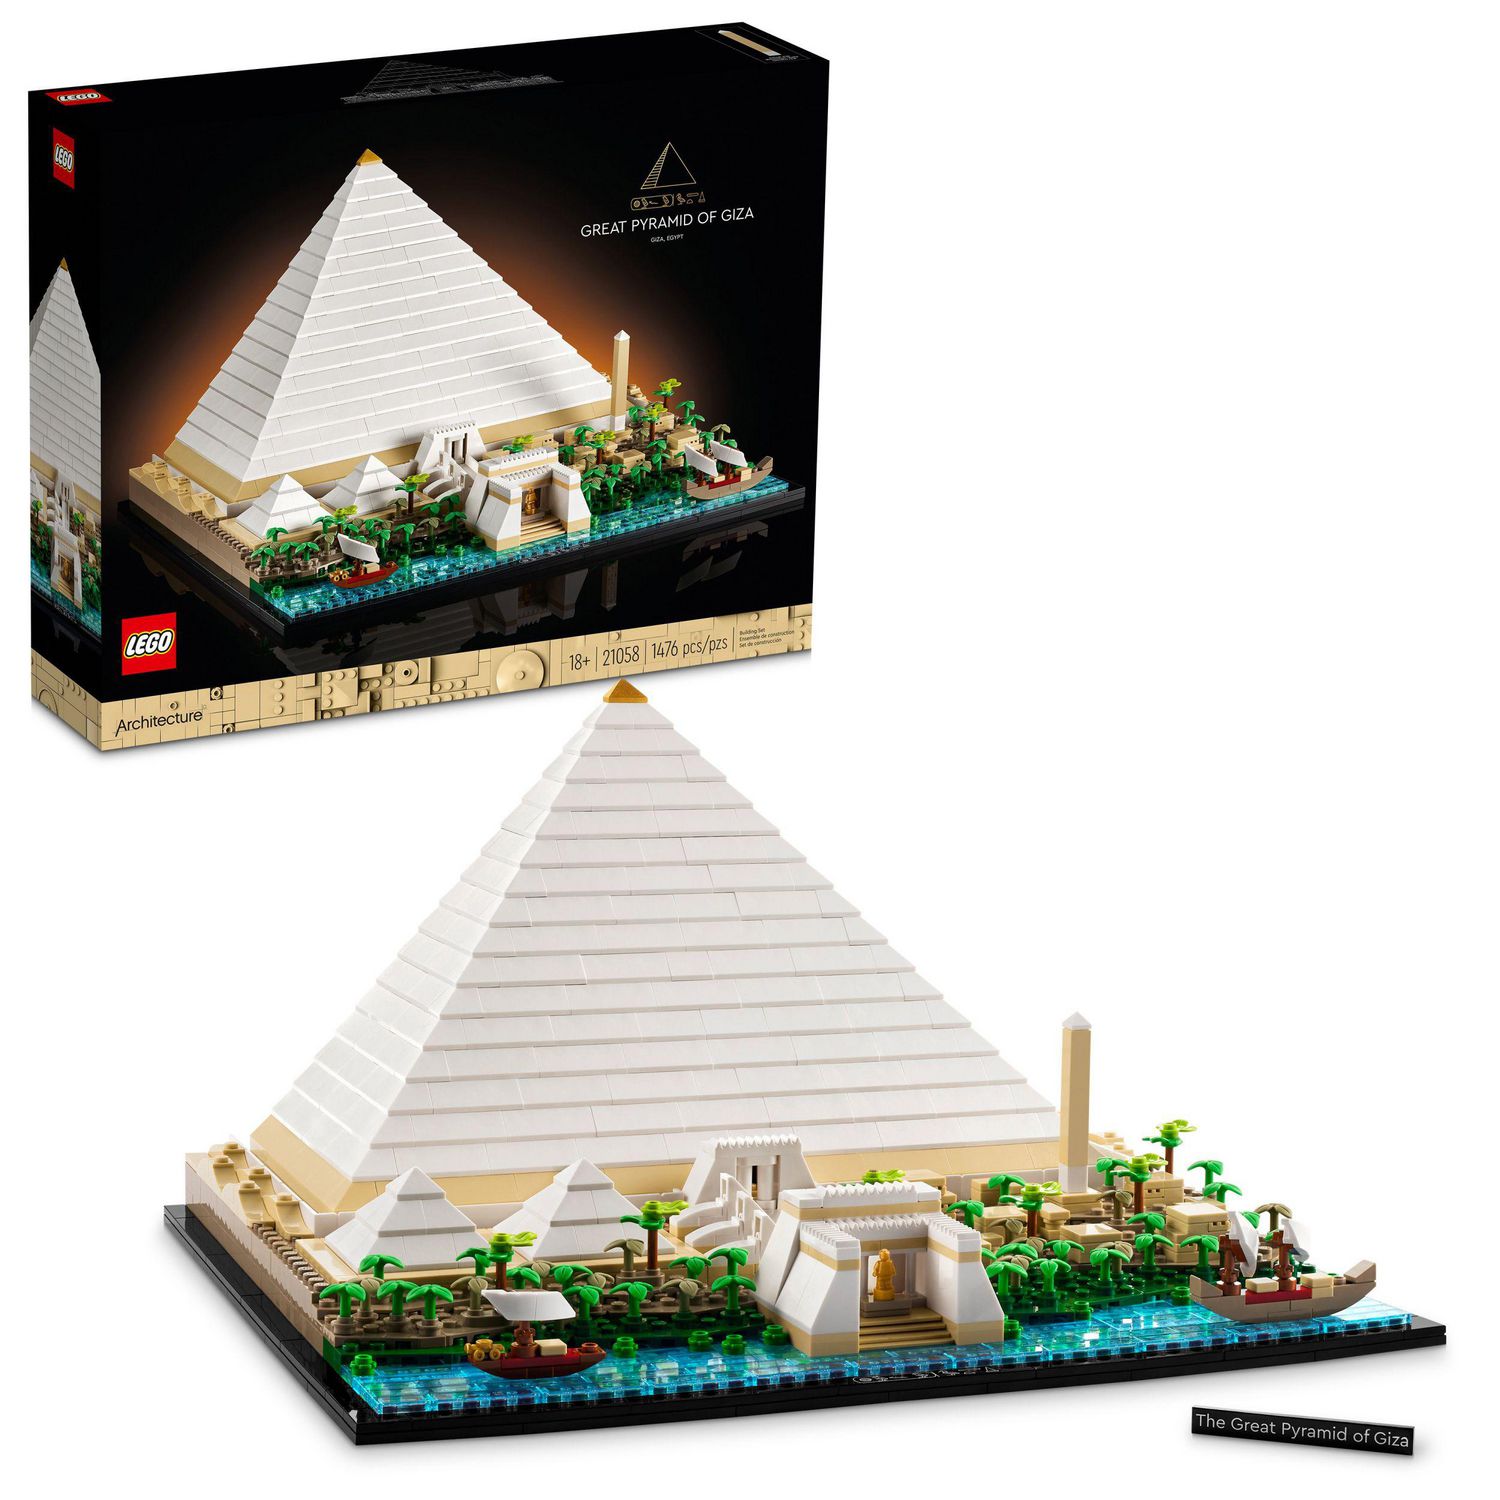 Vous adoriez Pyramide à la télé ? Foncez sur le jeu de société